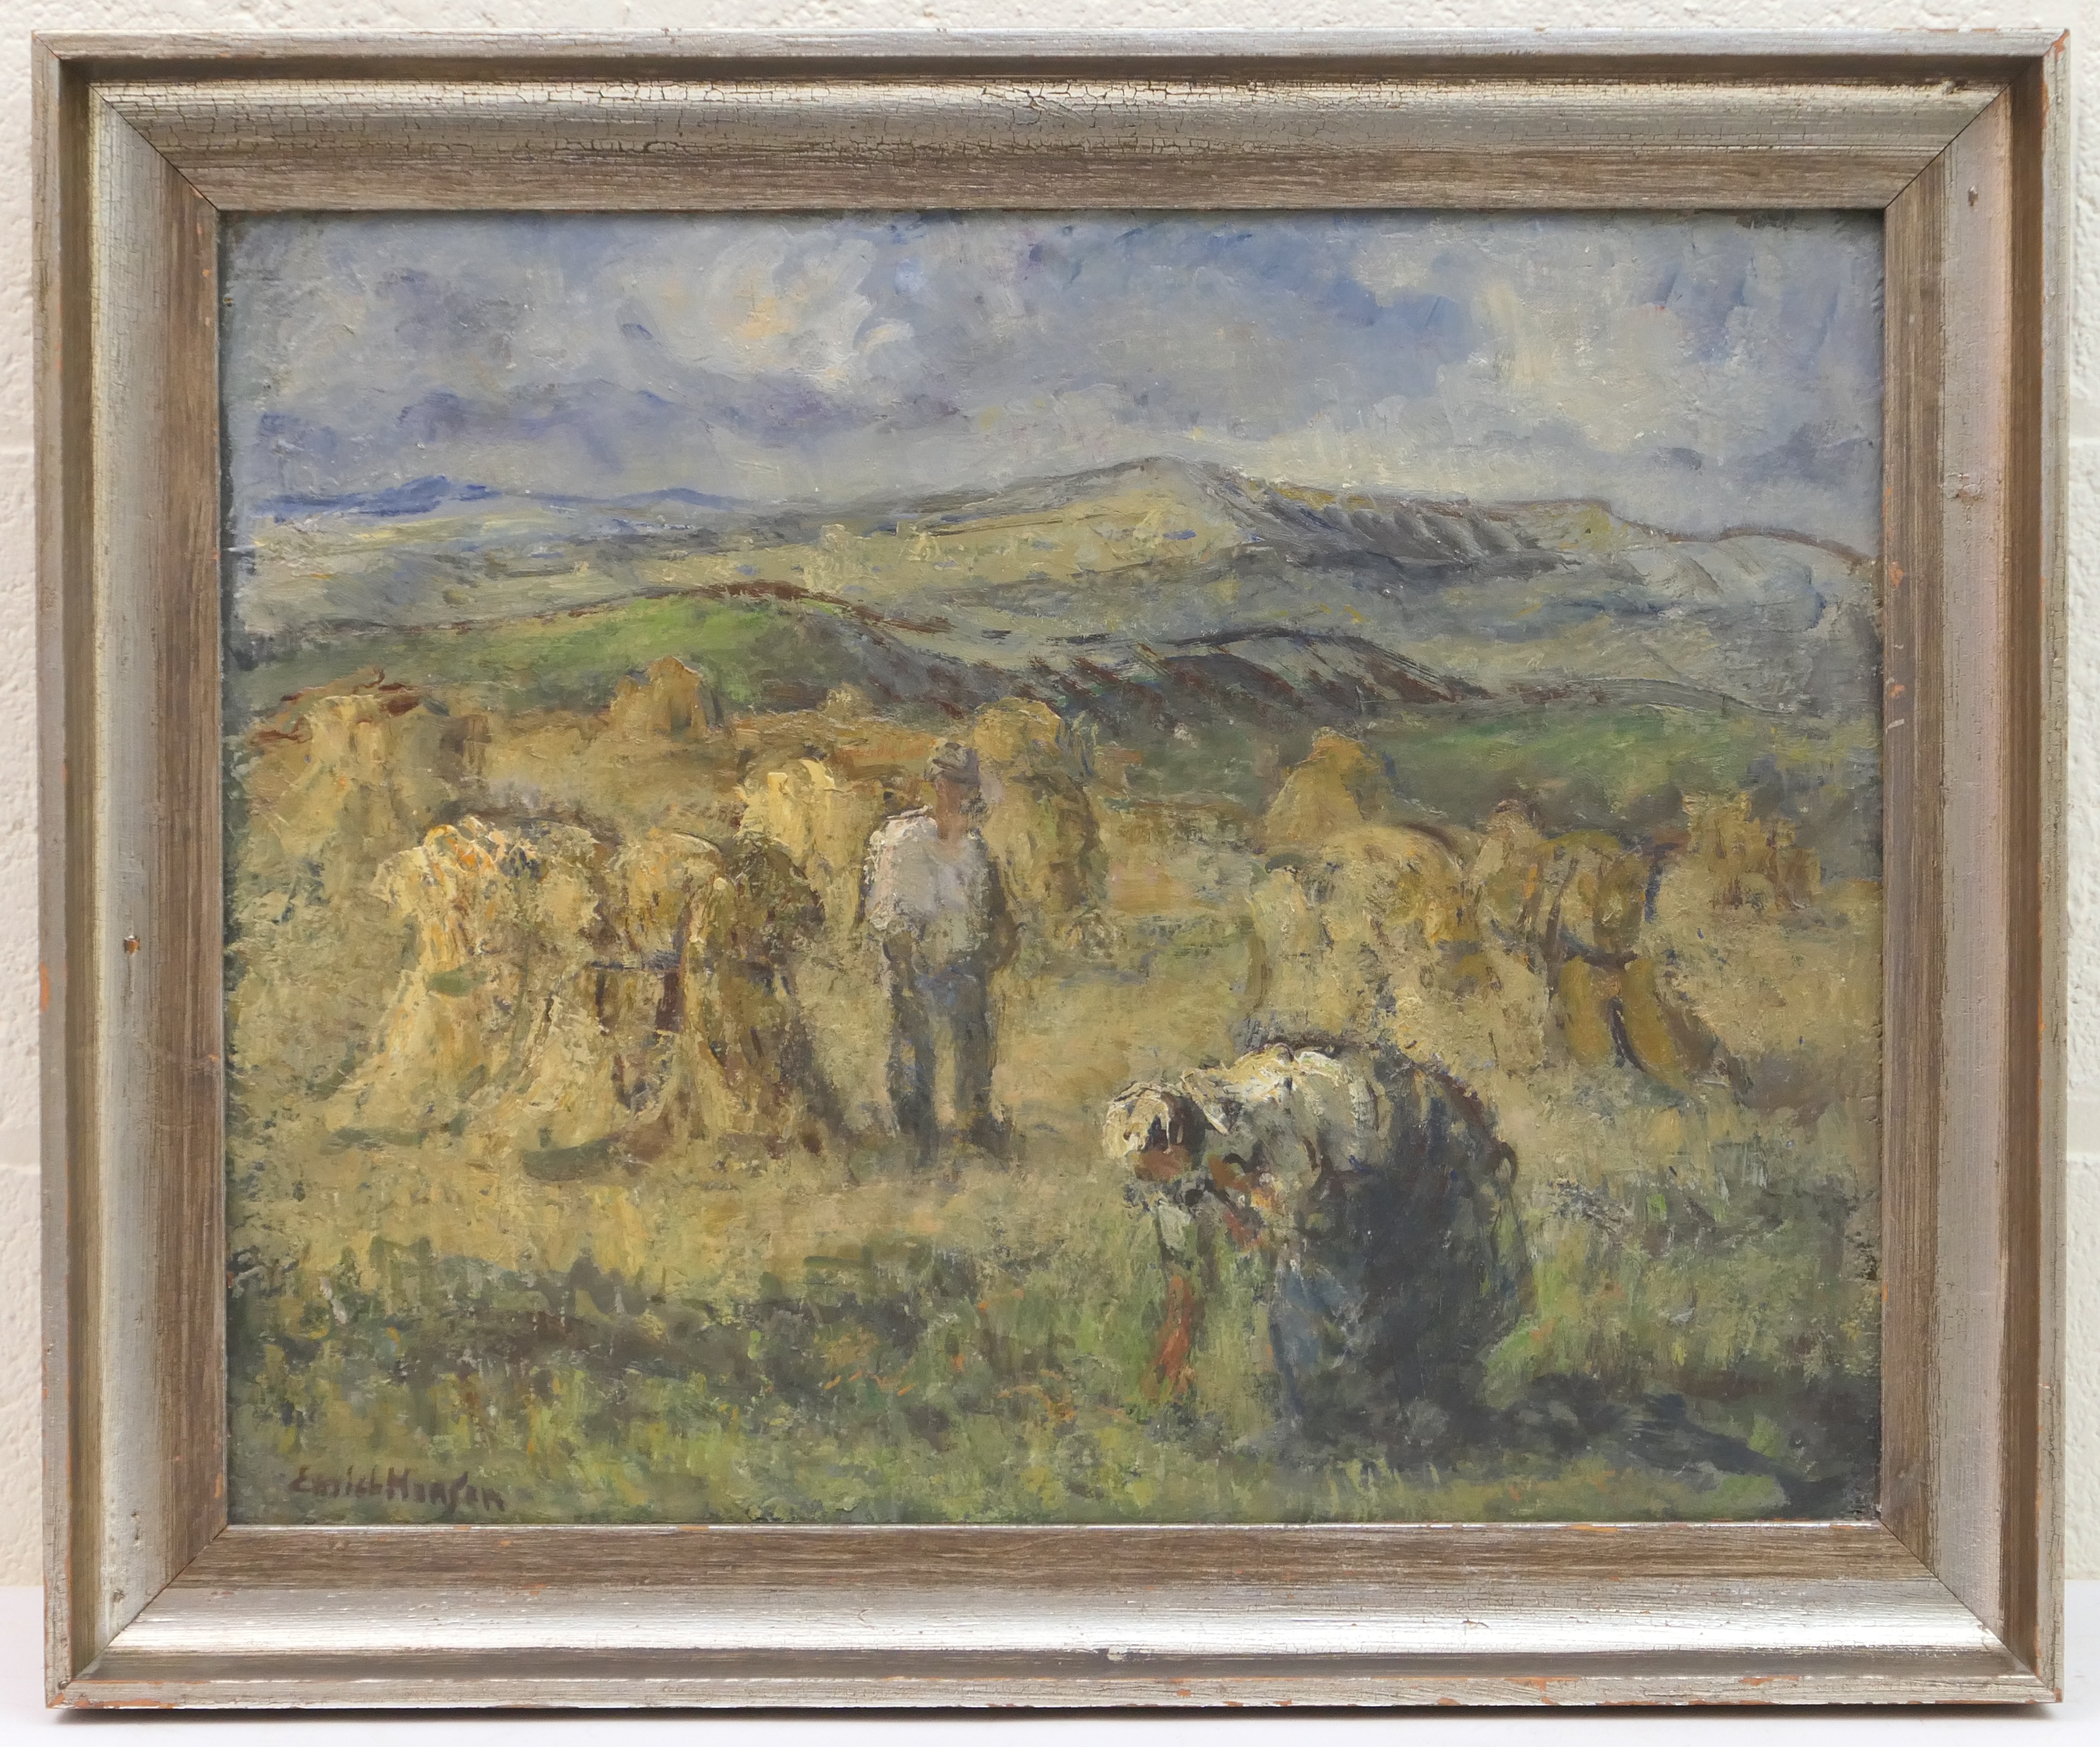 Emile Hansen (Danish, 1878-1952), Gleaners, oil on canvas, signed, 40cm x 50cm